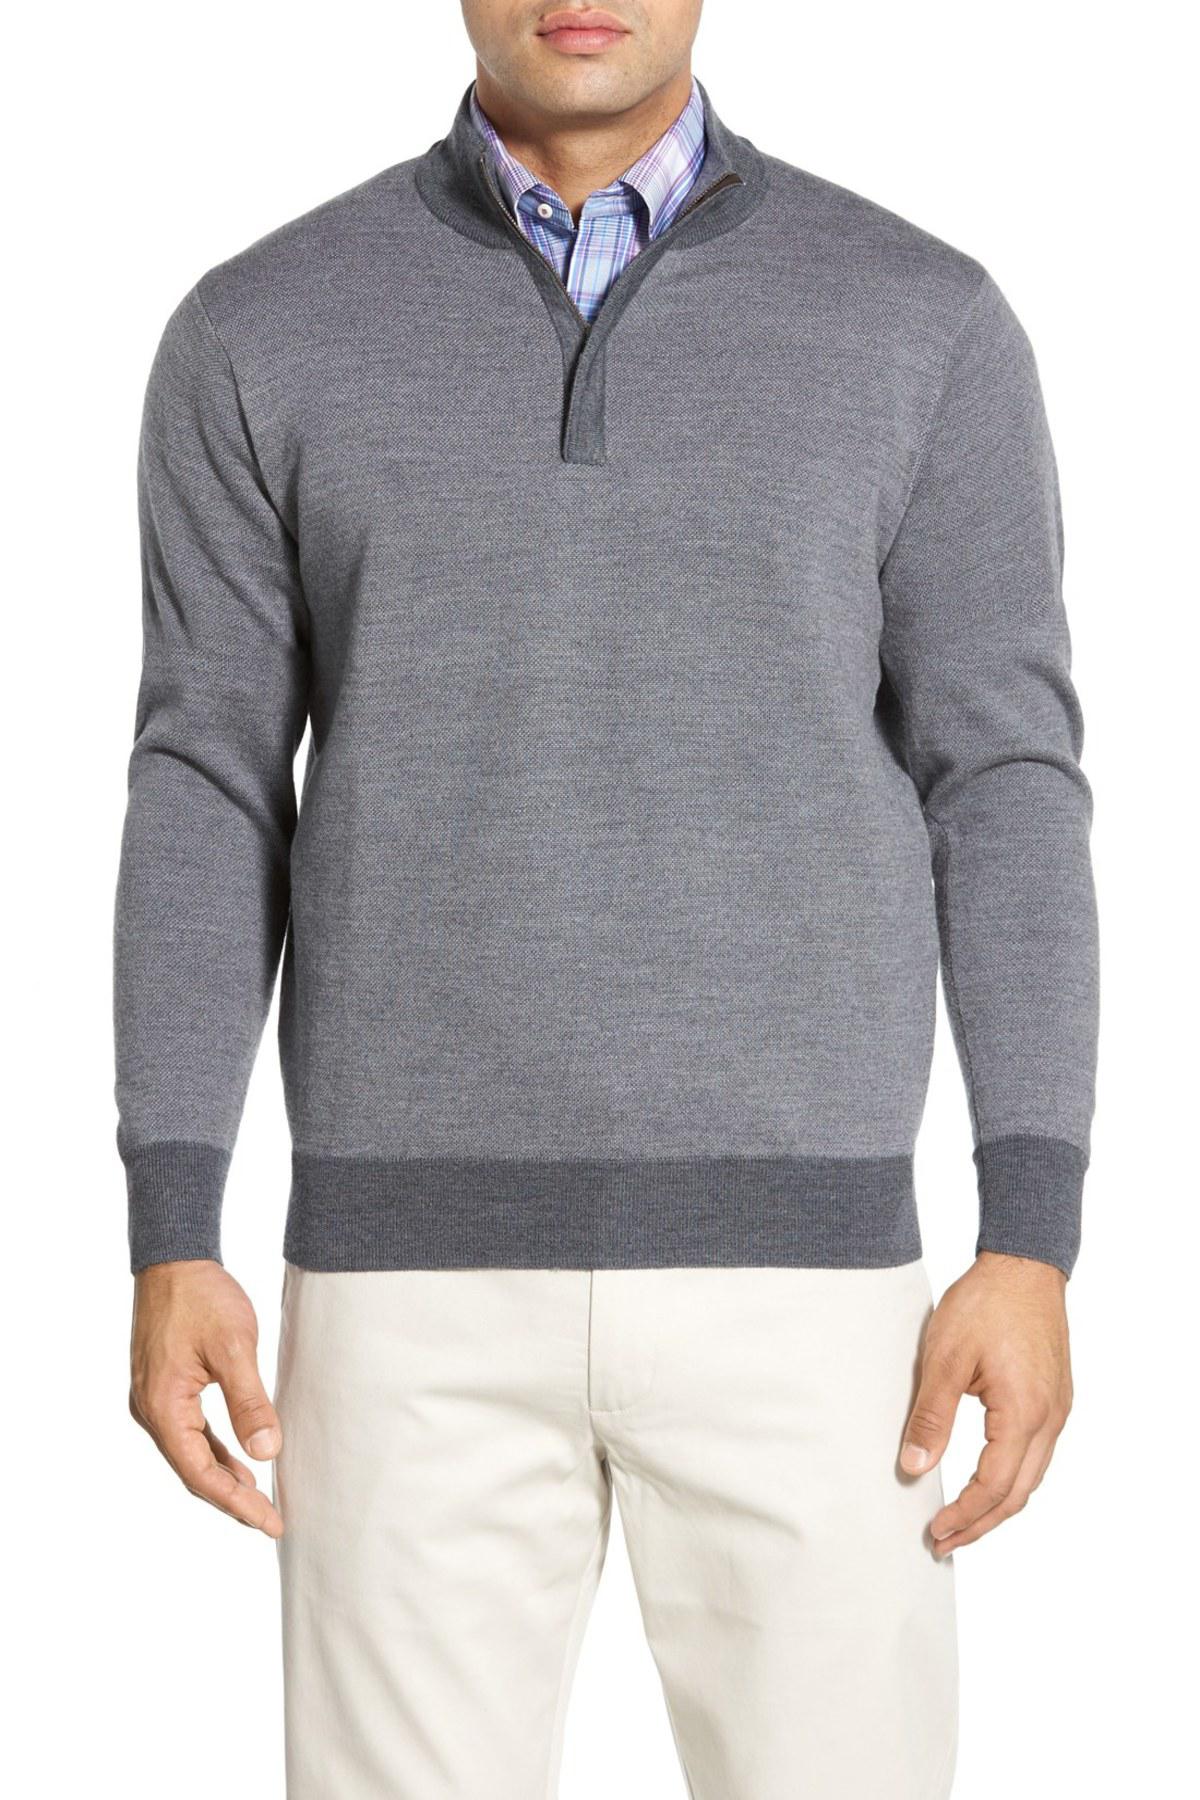 Lyst - Peter Millar Quarter Zip Merino Wool Sweater in Gray for Men